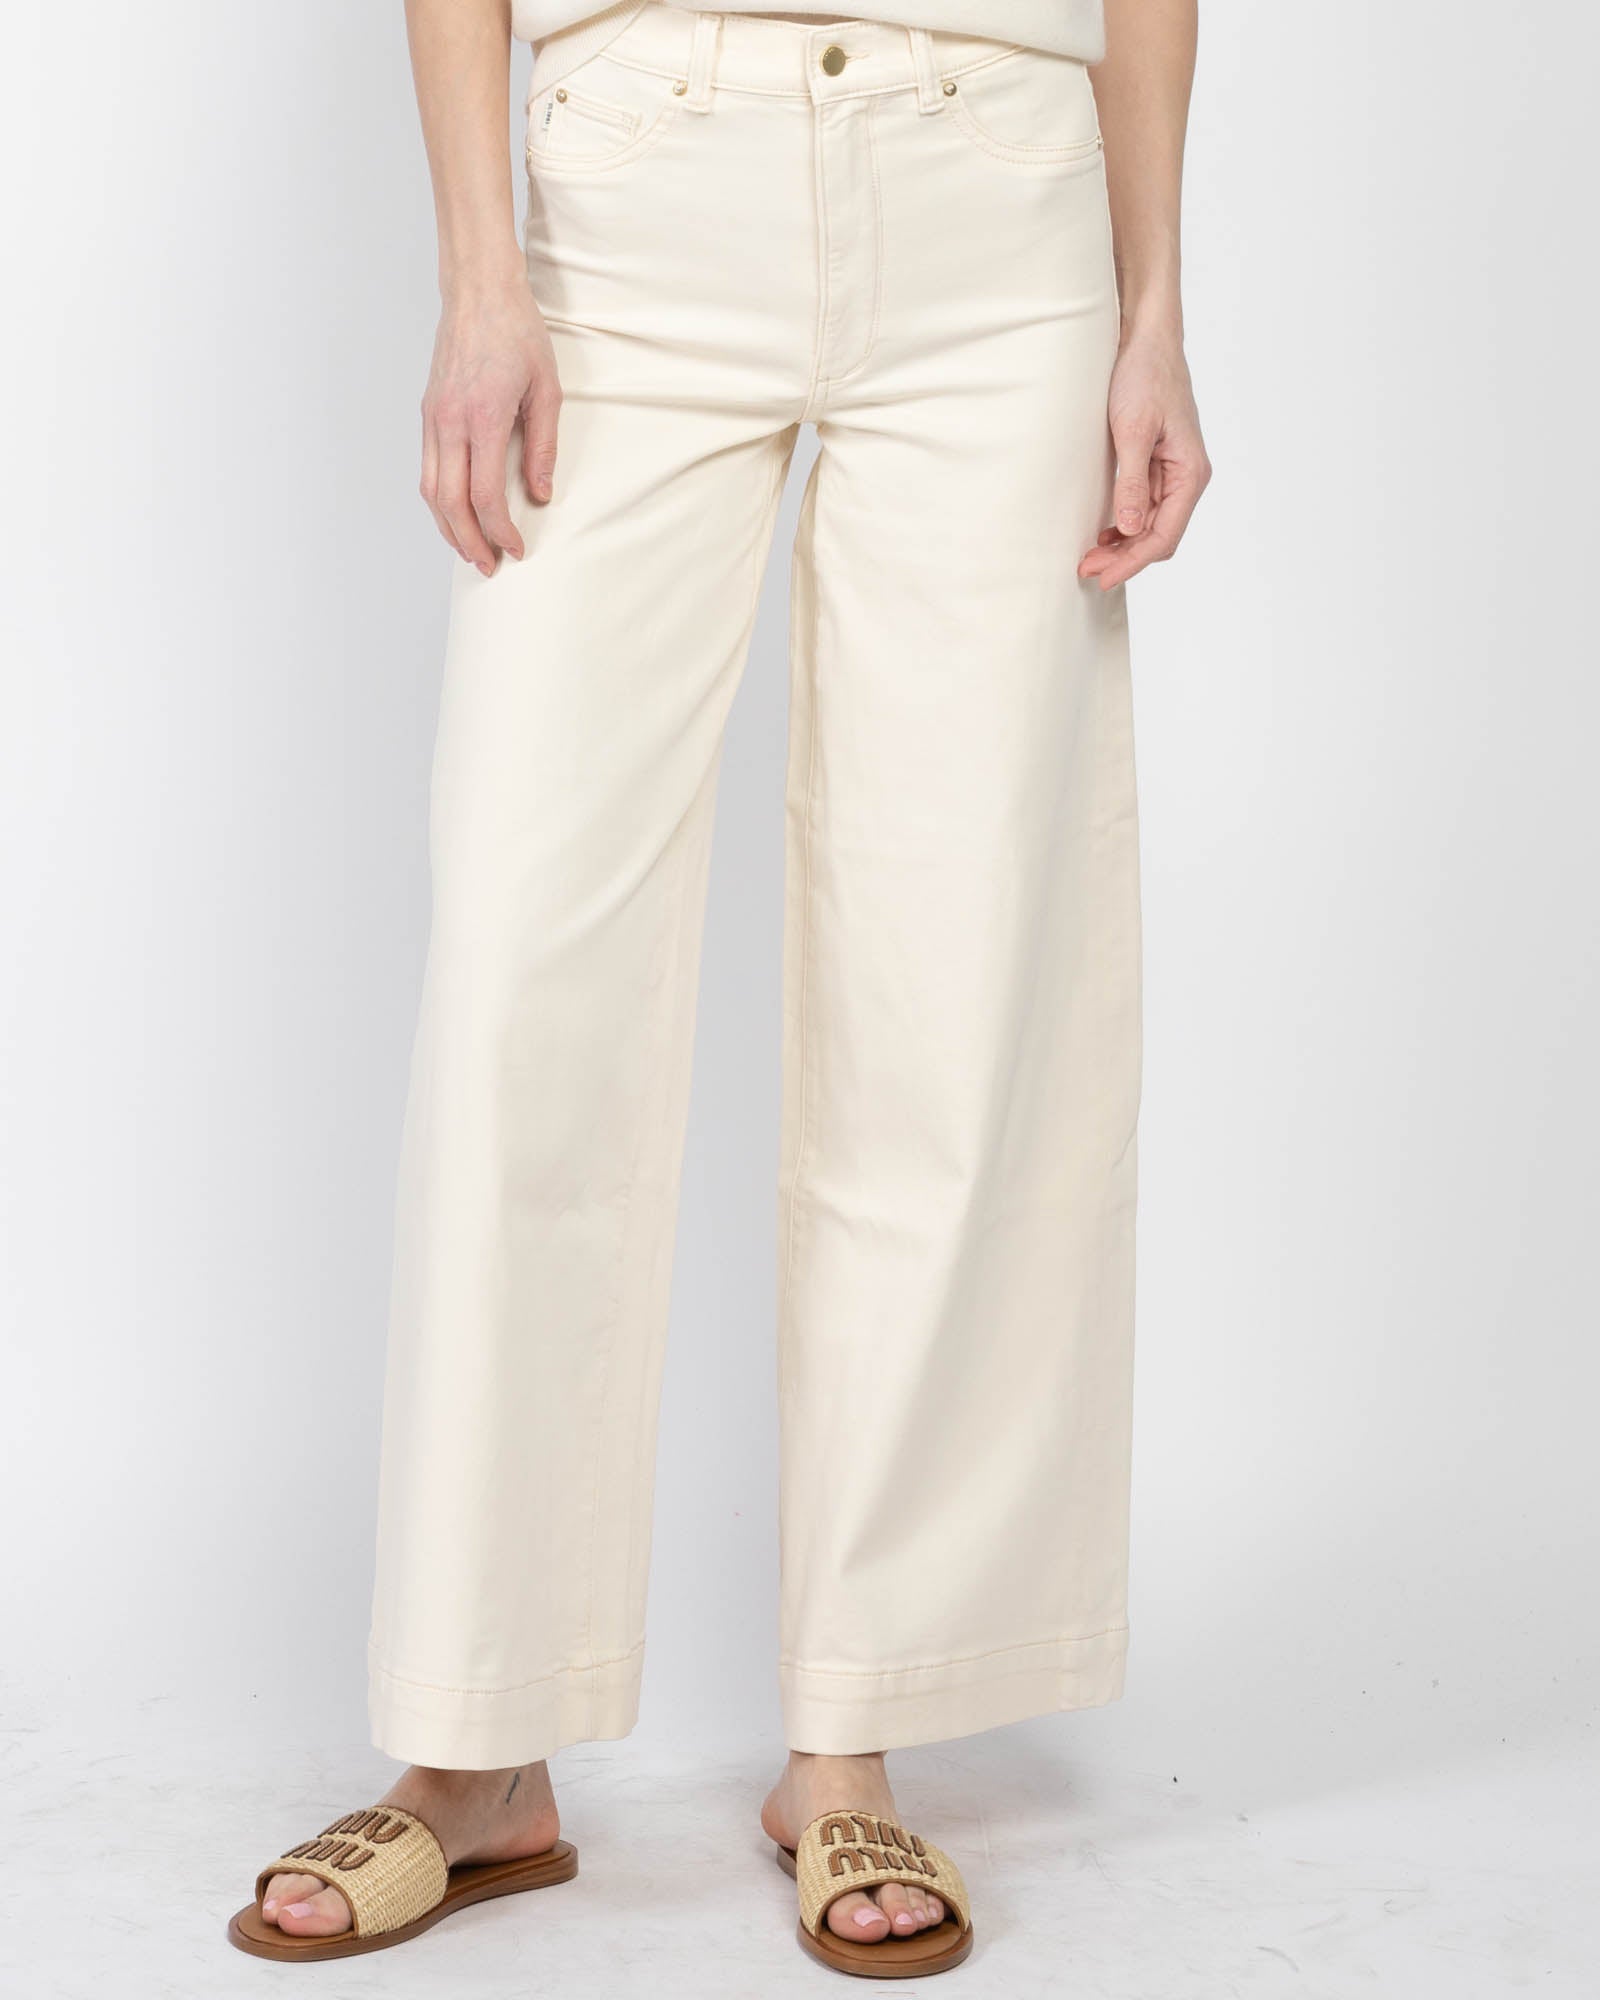 Hepburn Wide Leg Jeans - DL1961, Luxury Designer Fashion